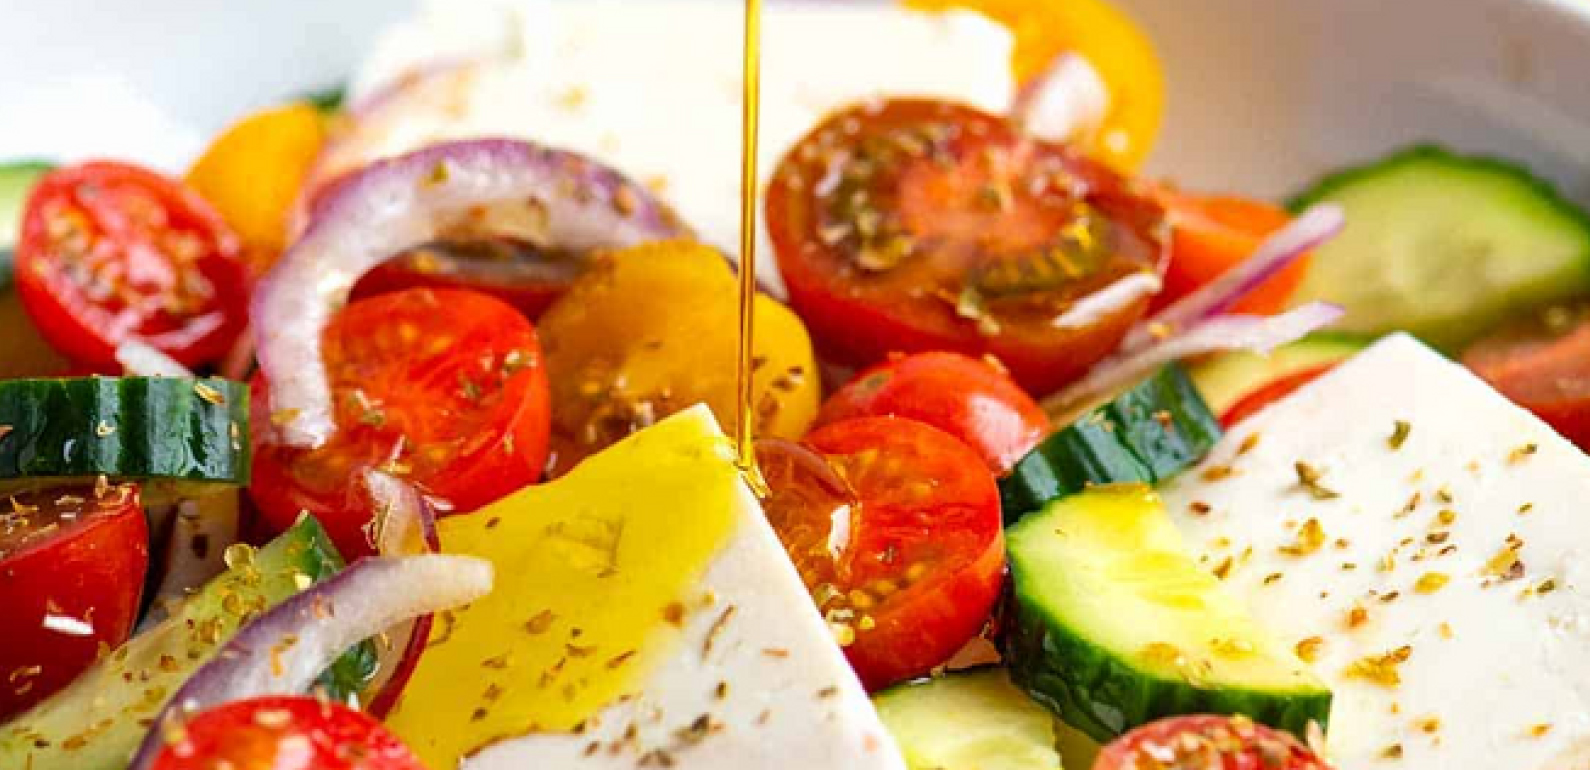 希臘沙拉：希臘美食食譜 - 克里特島橄欖油食譜